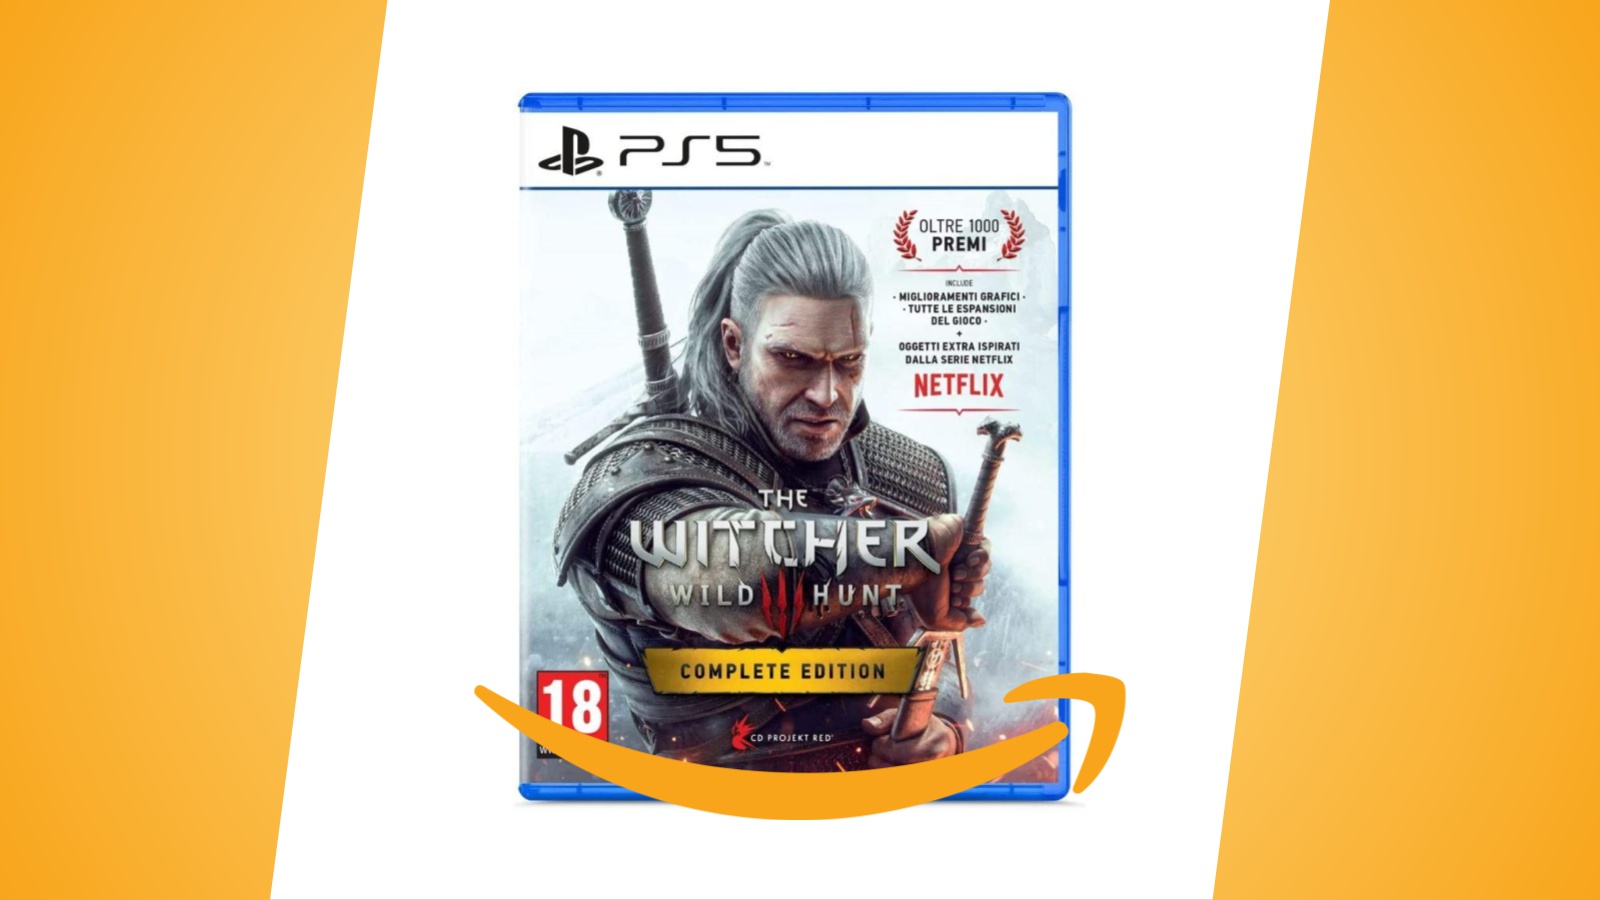 Offerte Amazon: The Witcher 3 Wild Hunt Complete Edition per PS5 e Xbox Series X al minimo storico